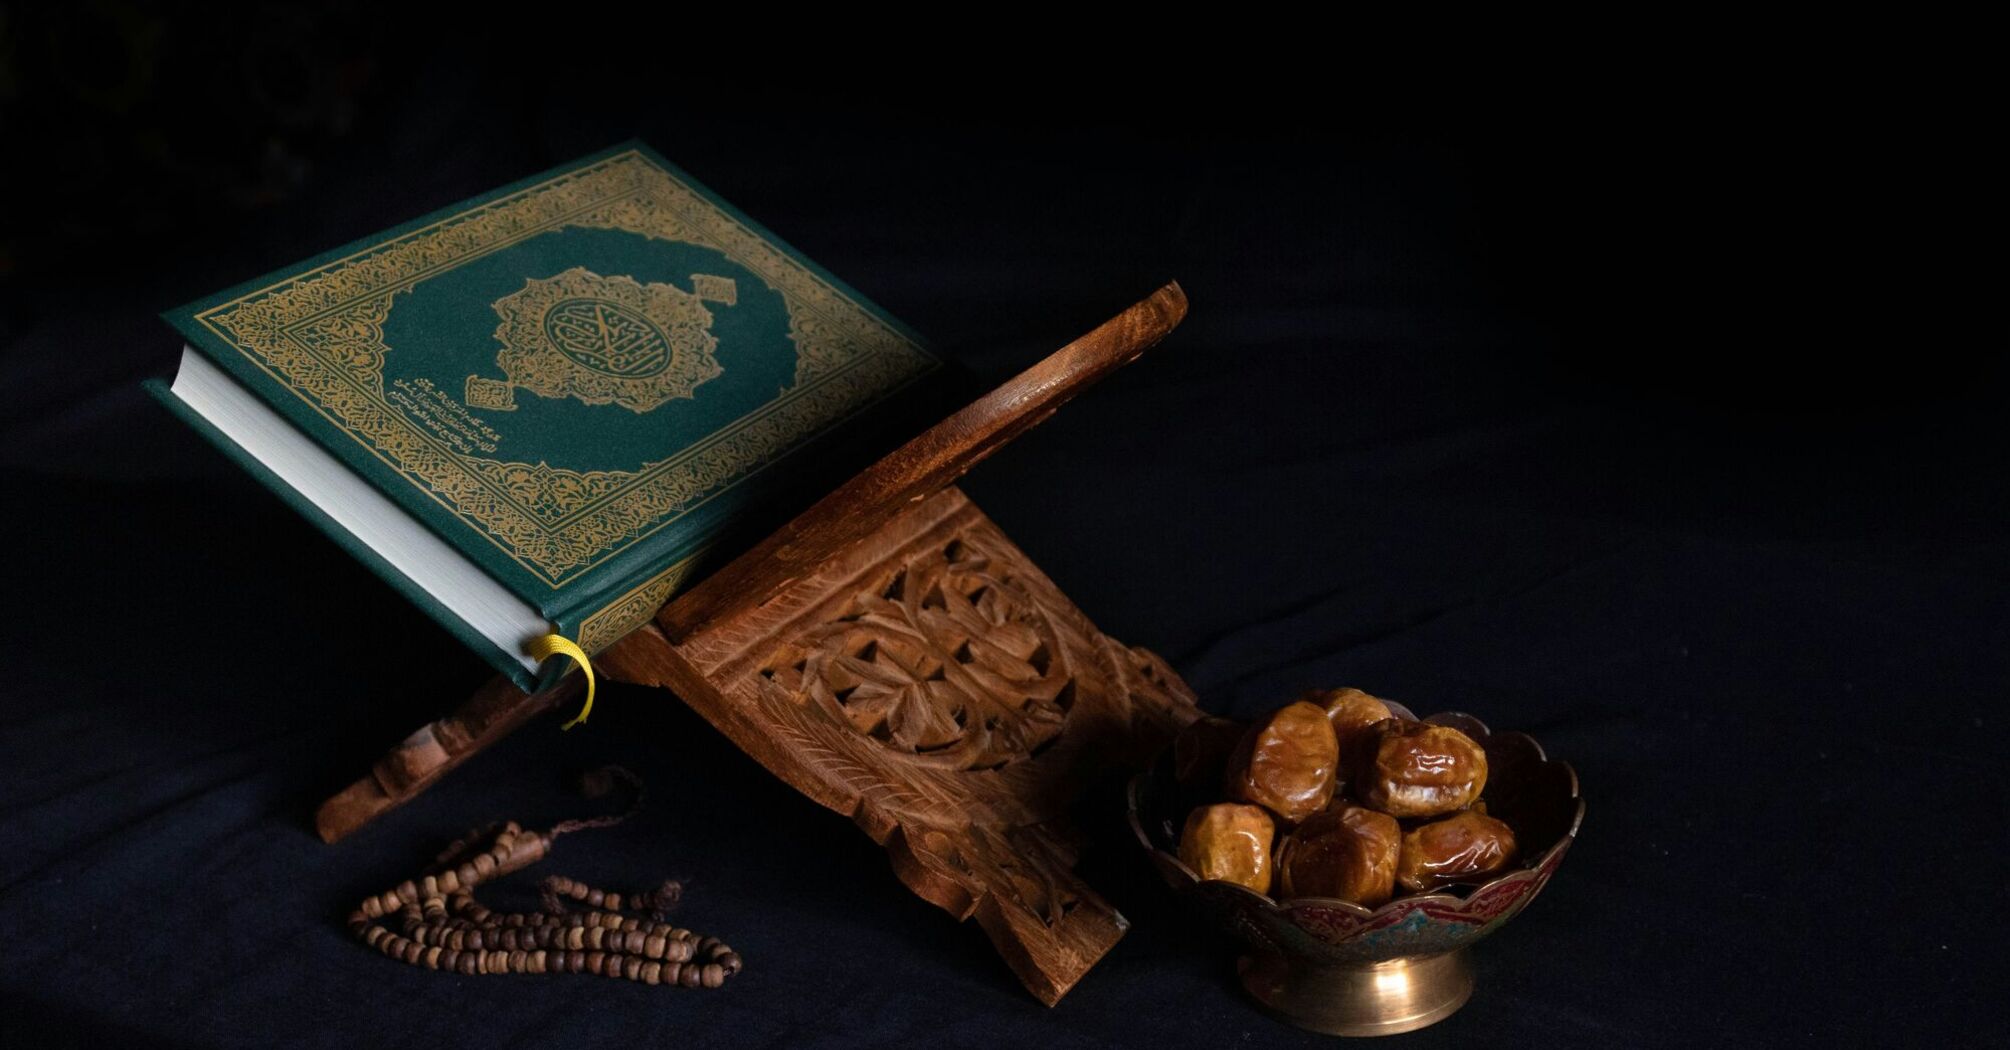 Green book beside brown wooden stick